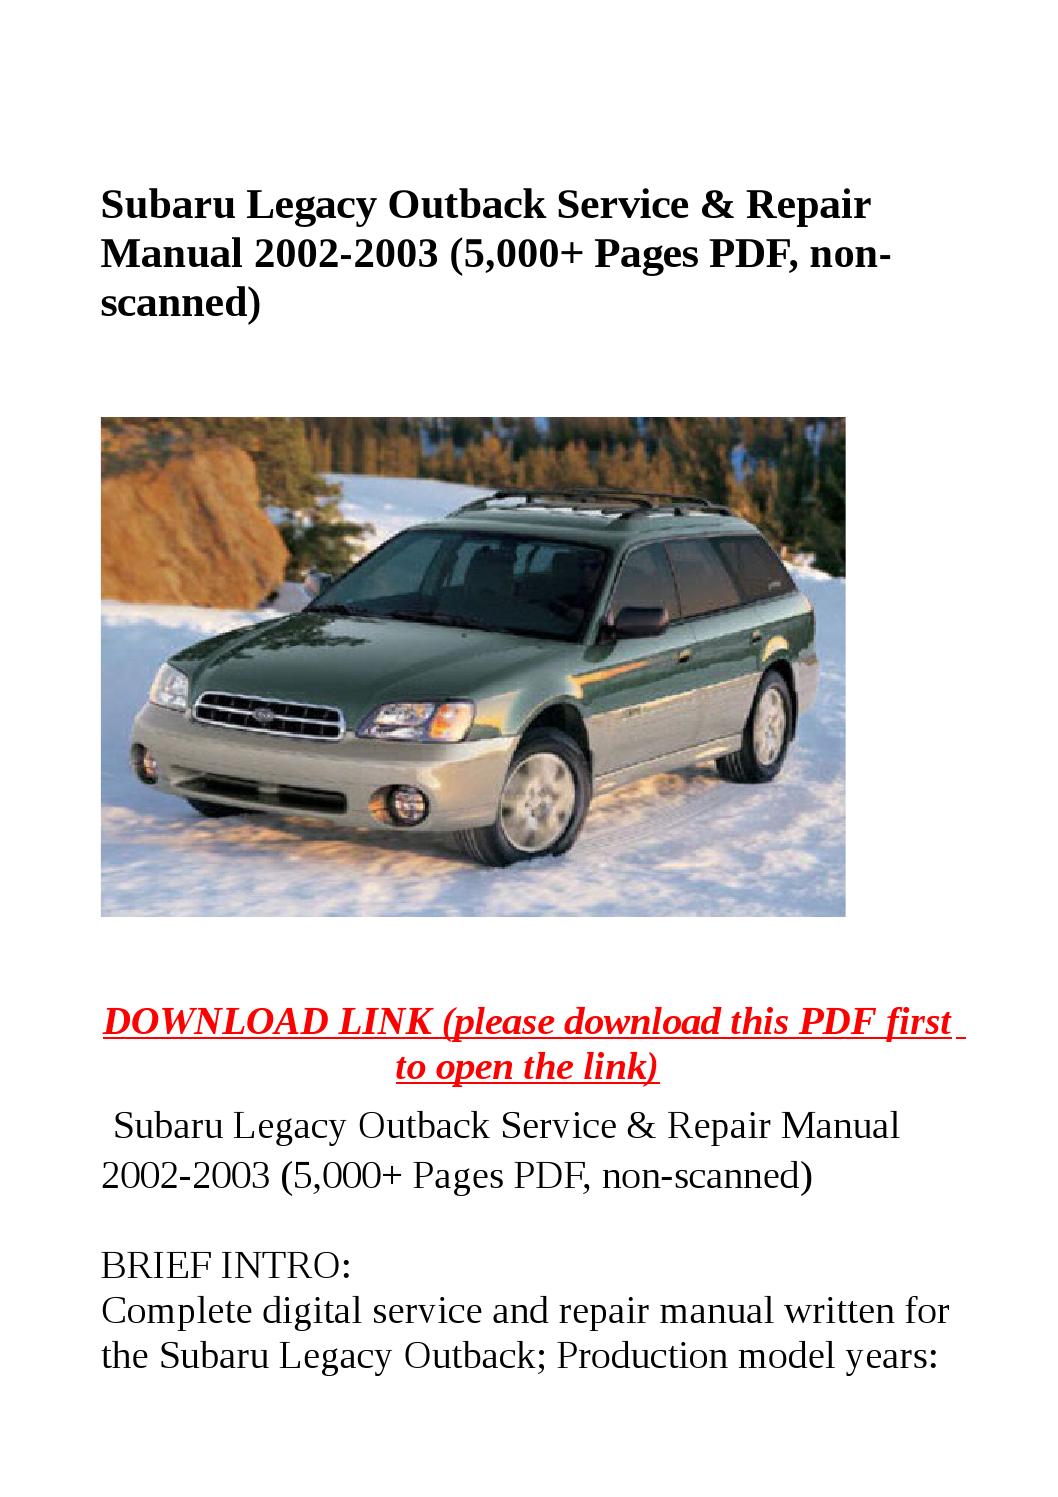 2004 subaru legacy repair manual pdf